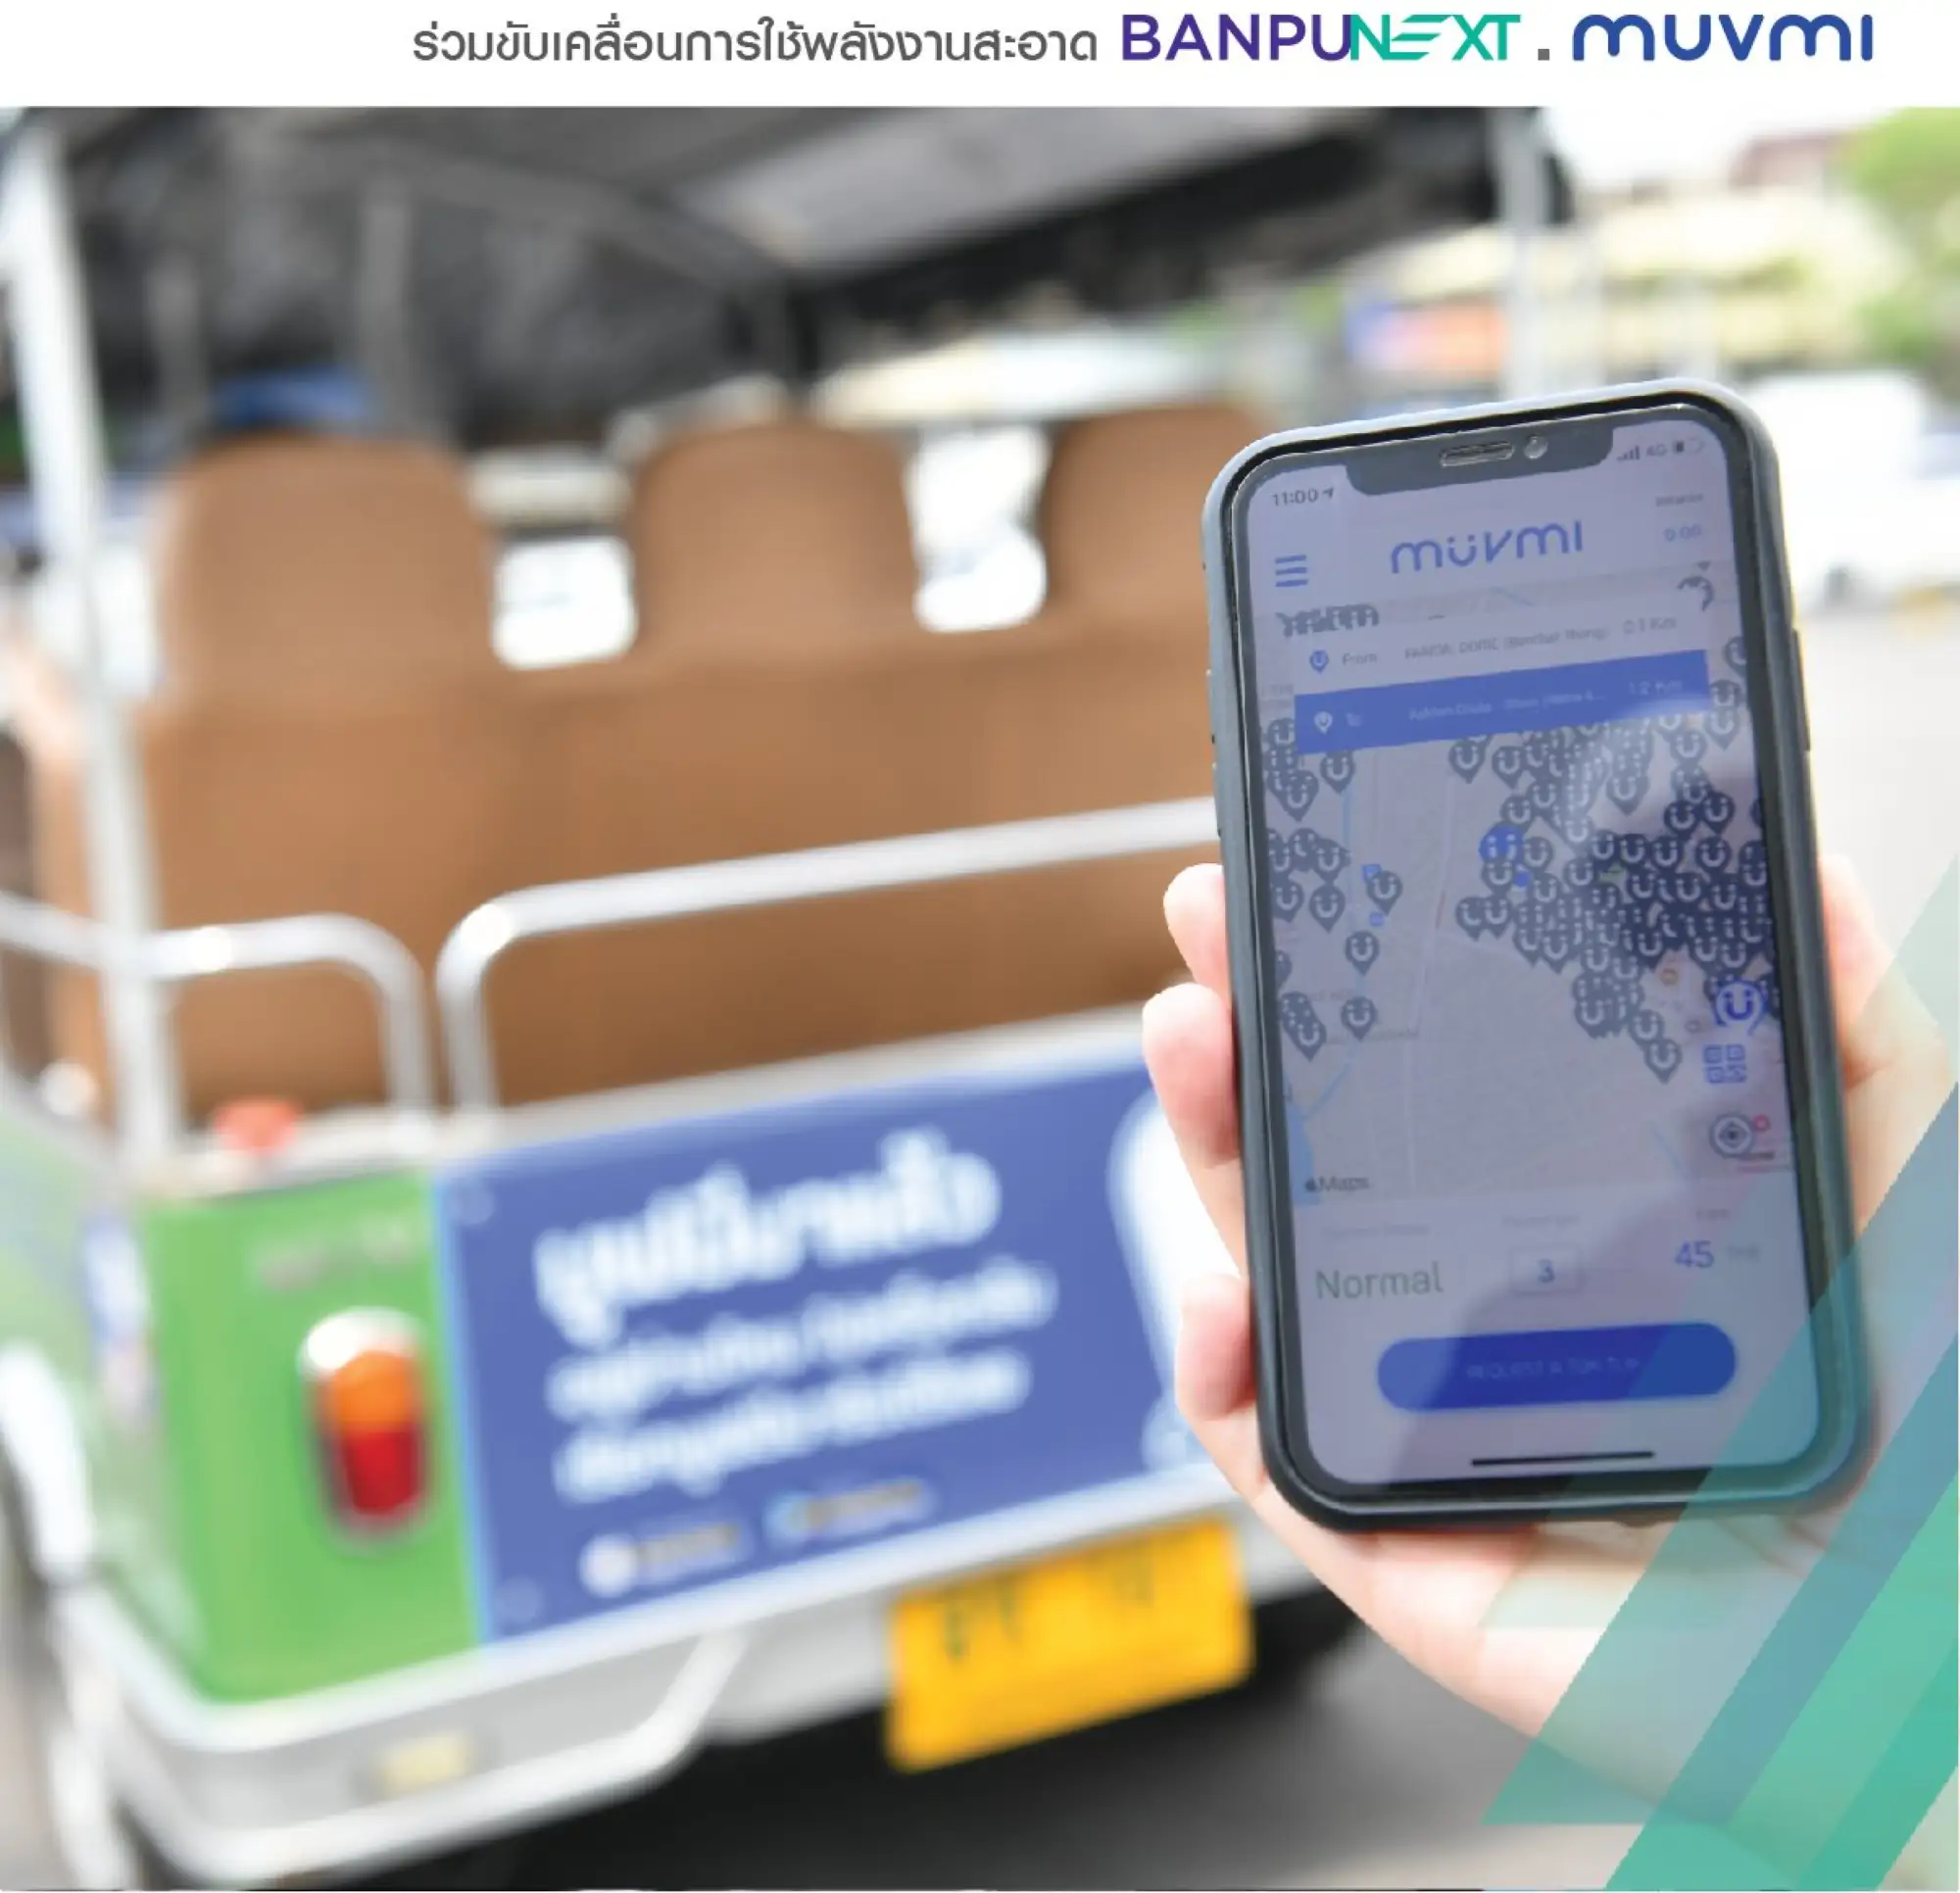 乘客要使用 MuvMi 嘟嘟车共乘服务，手机必须先下载APP（图片来源：@muvmi脸书粉专）